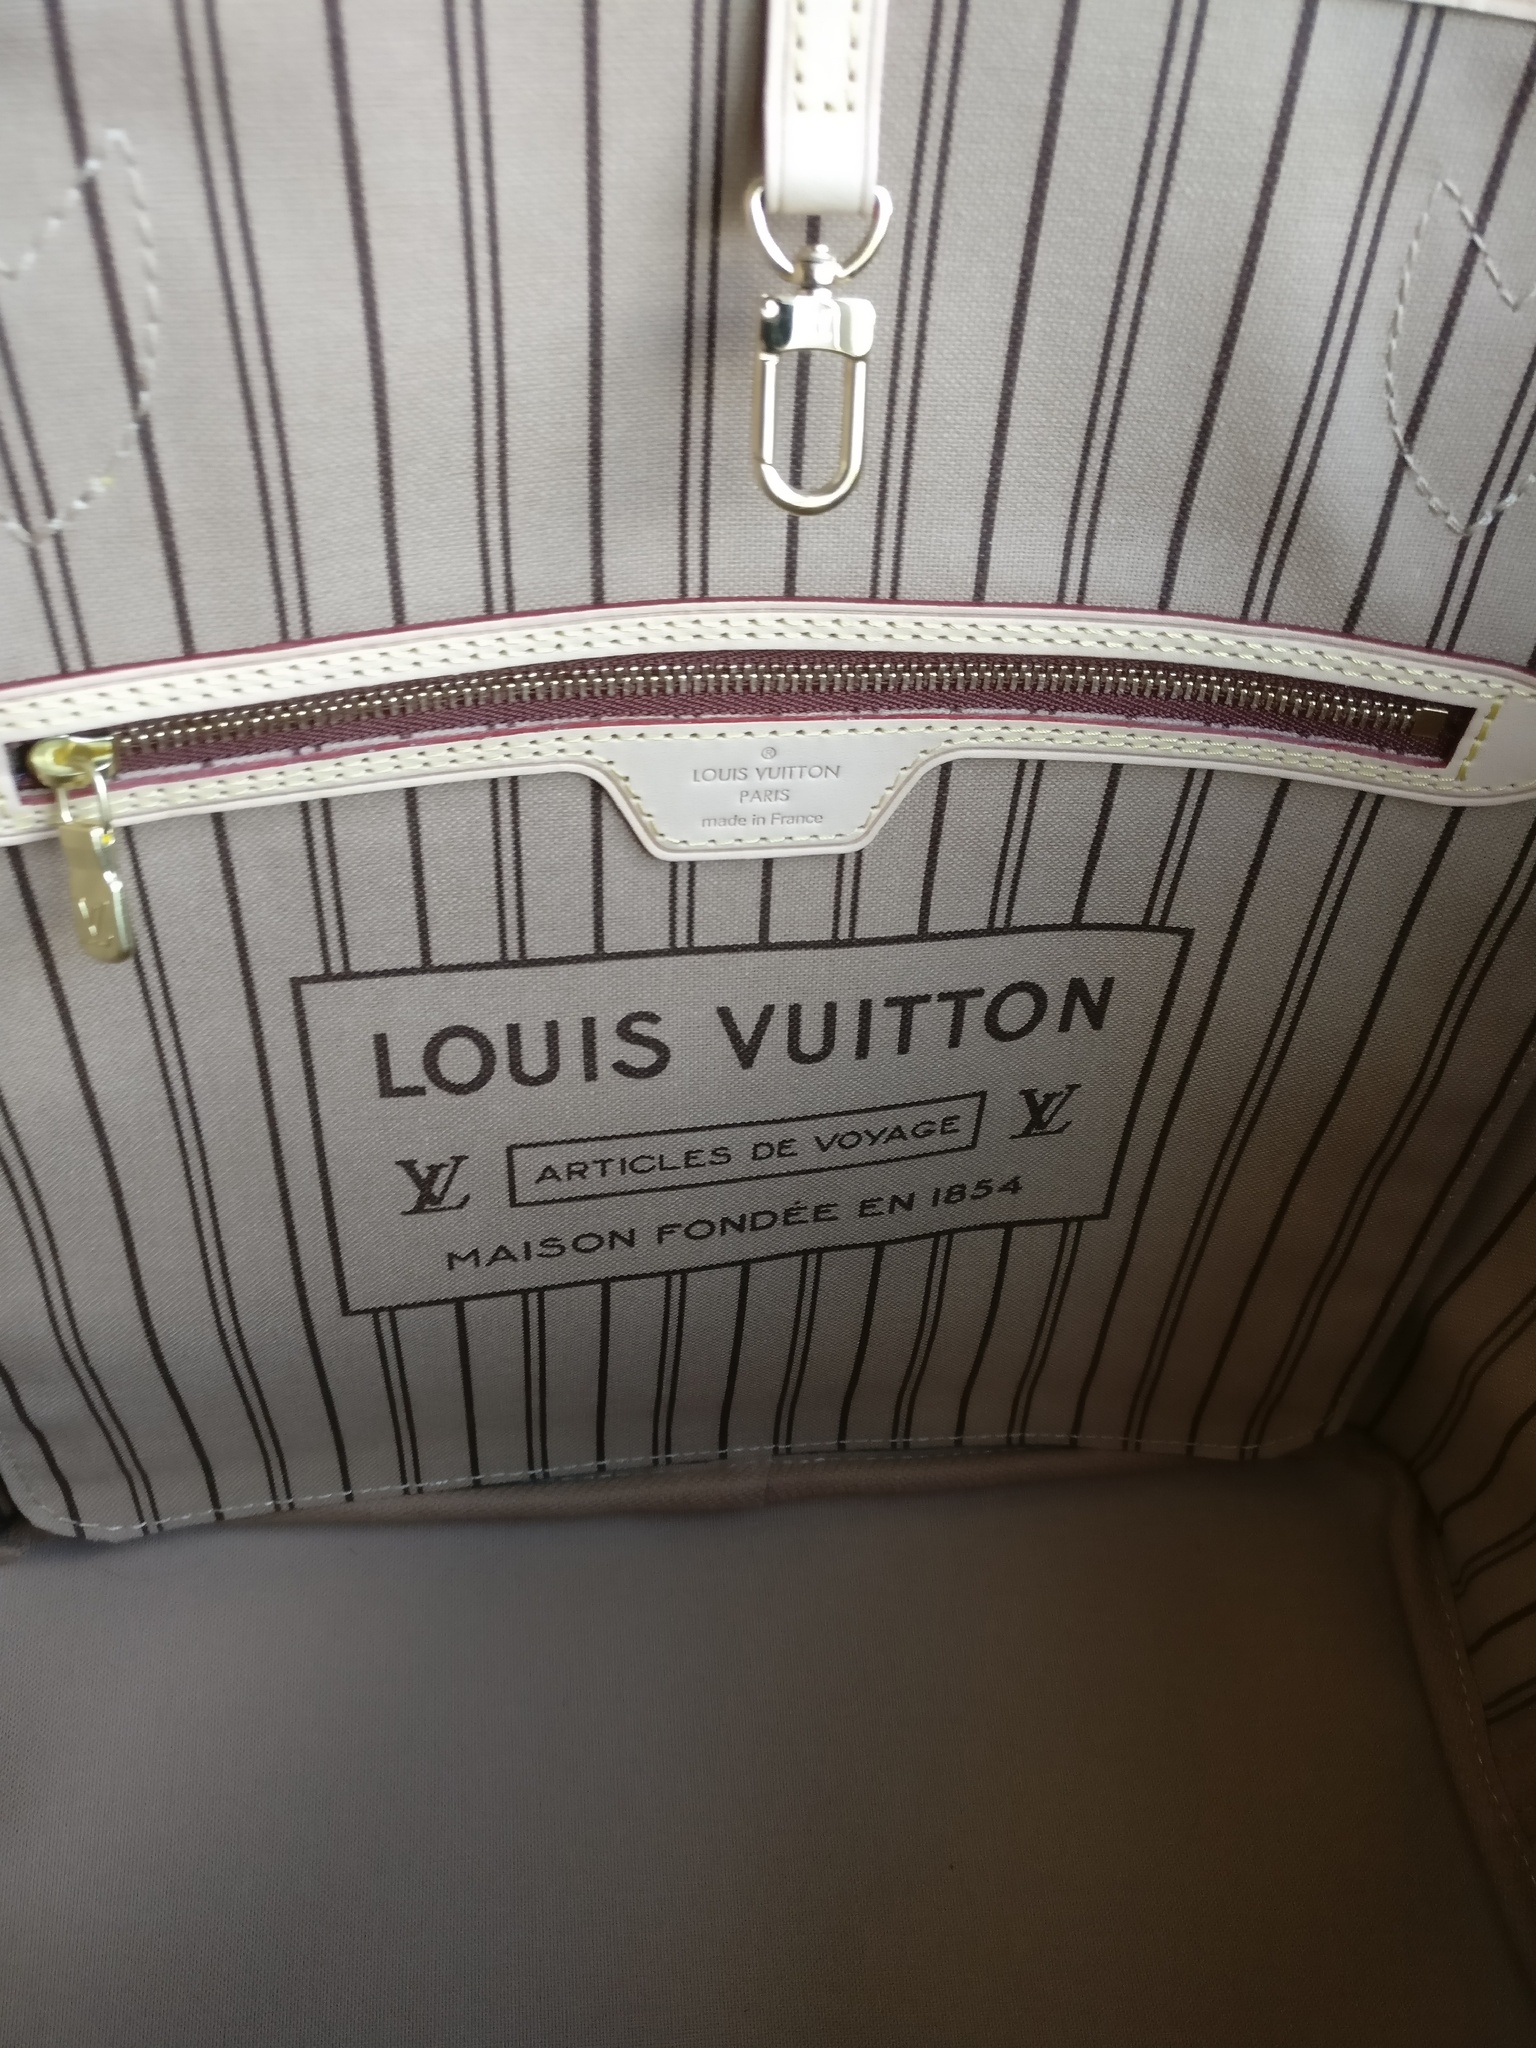 Louis Vuitton Neverfull MM